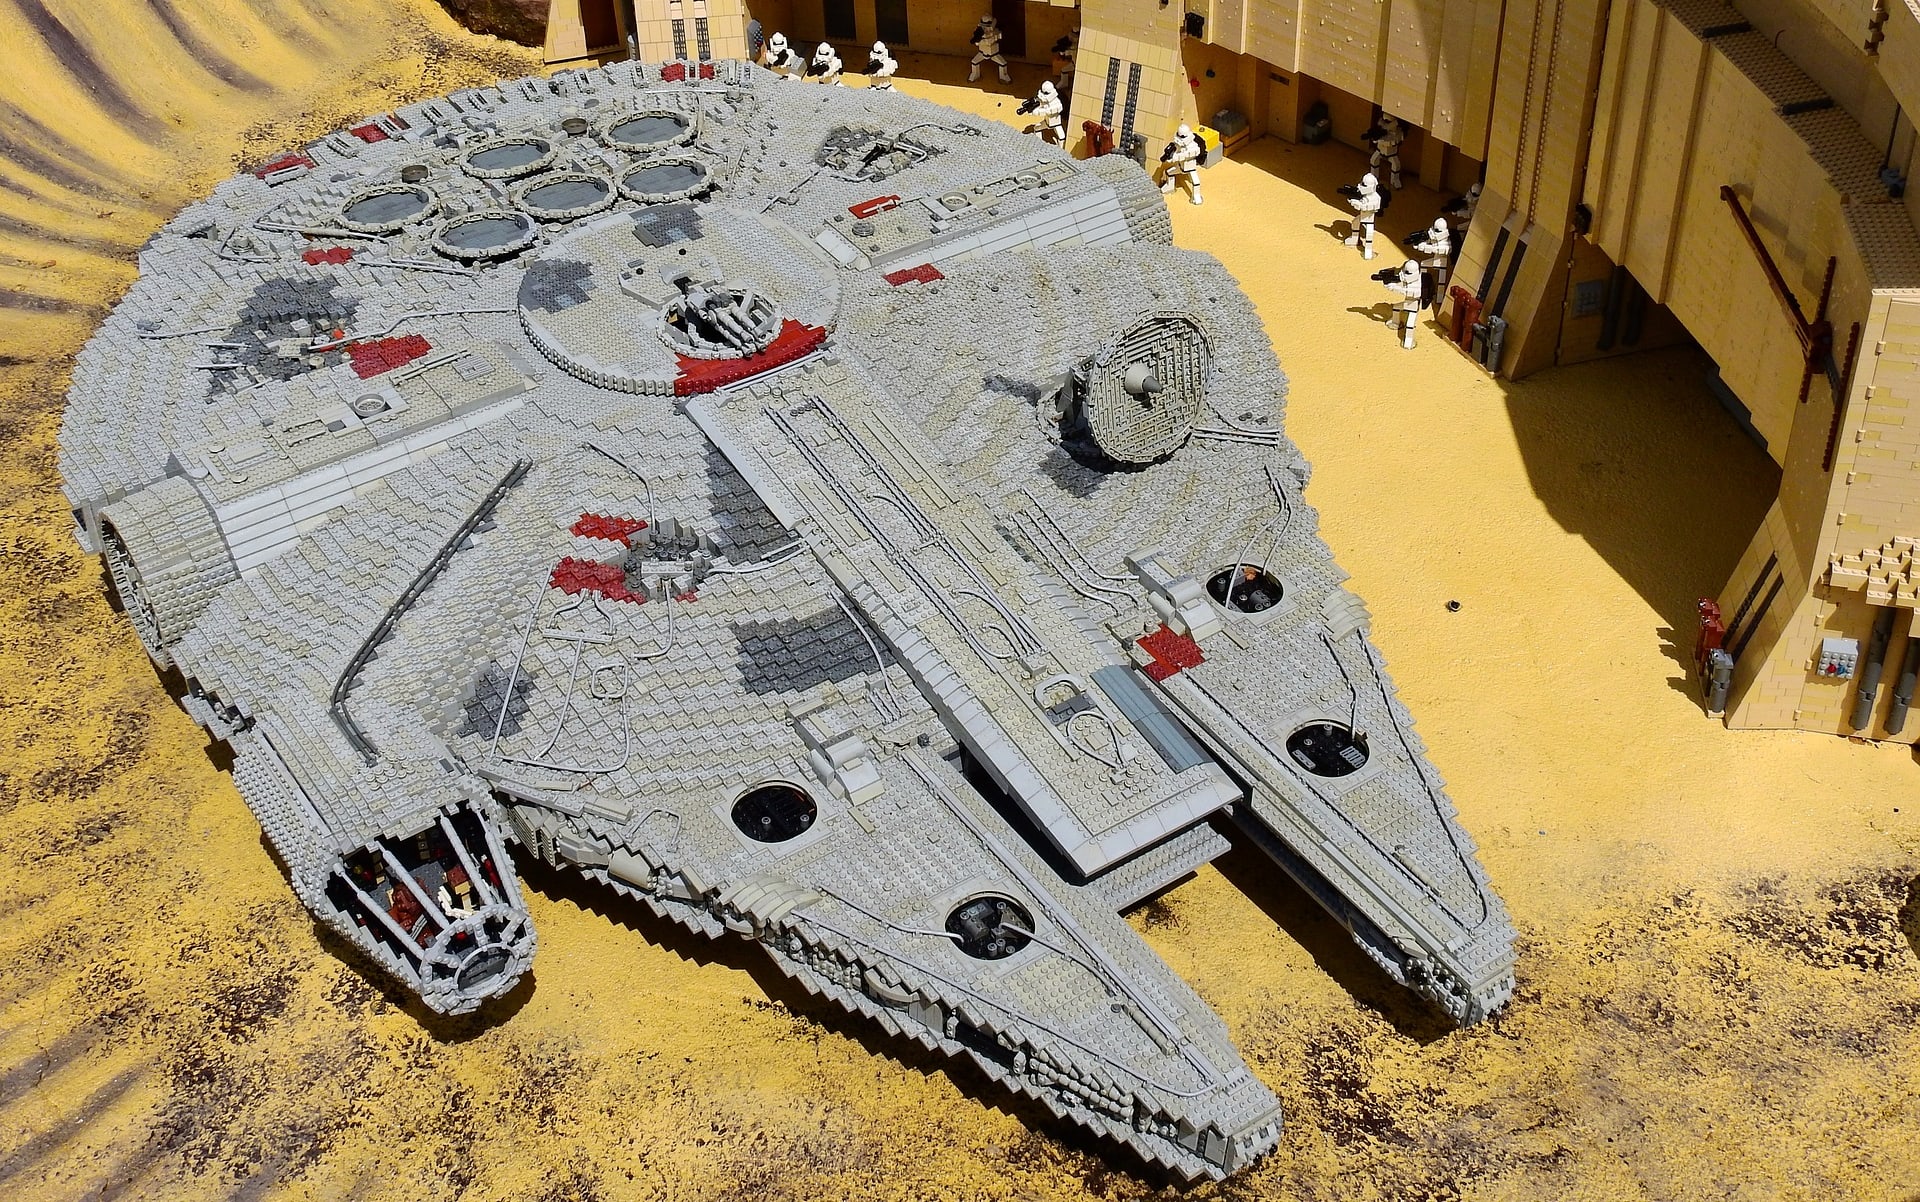 LEGO's Star Wars Millennium Falcon